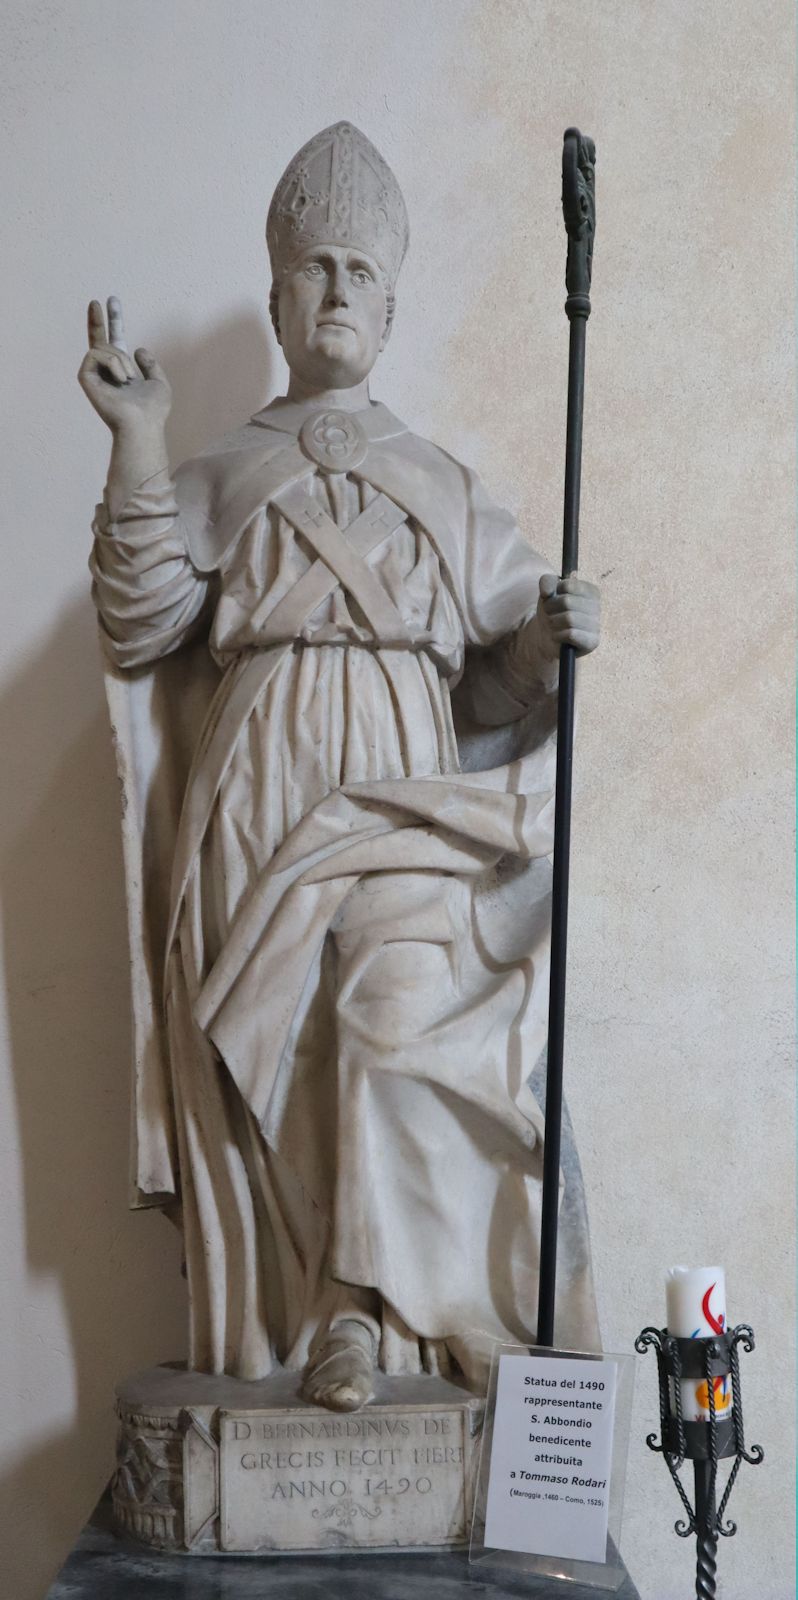 Tommaso Rodari (zugeschrieben): Statue, 1490, in der Kirche Sant'Abbondio in Como